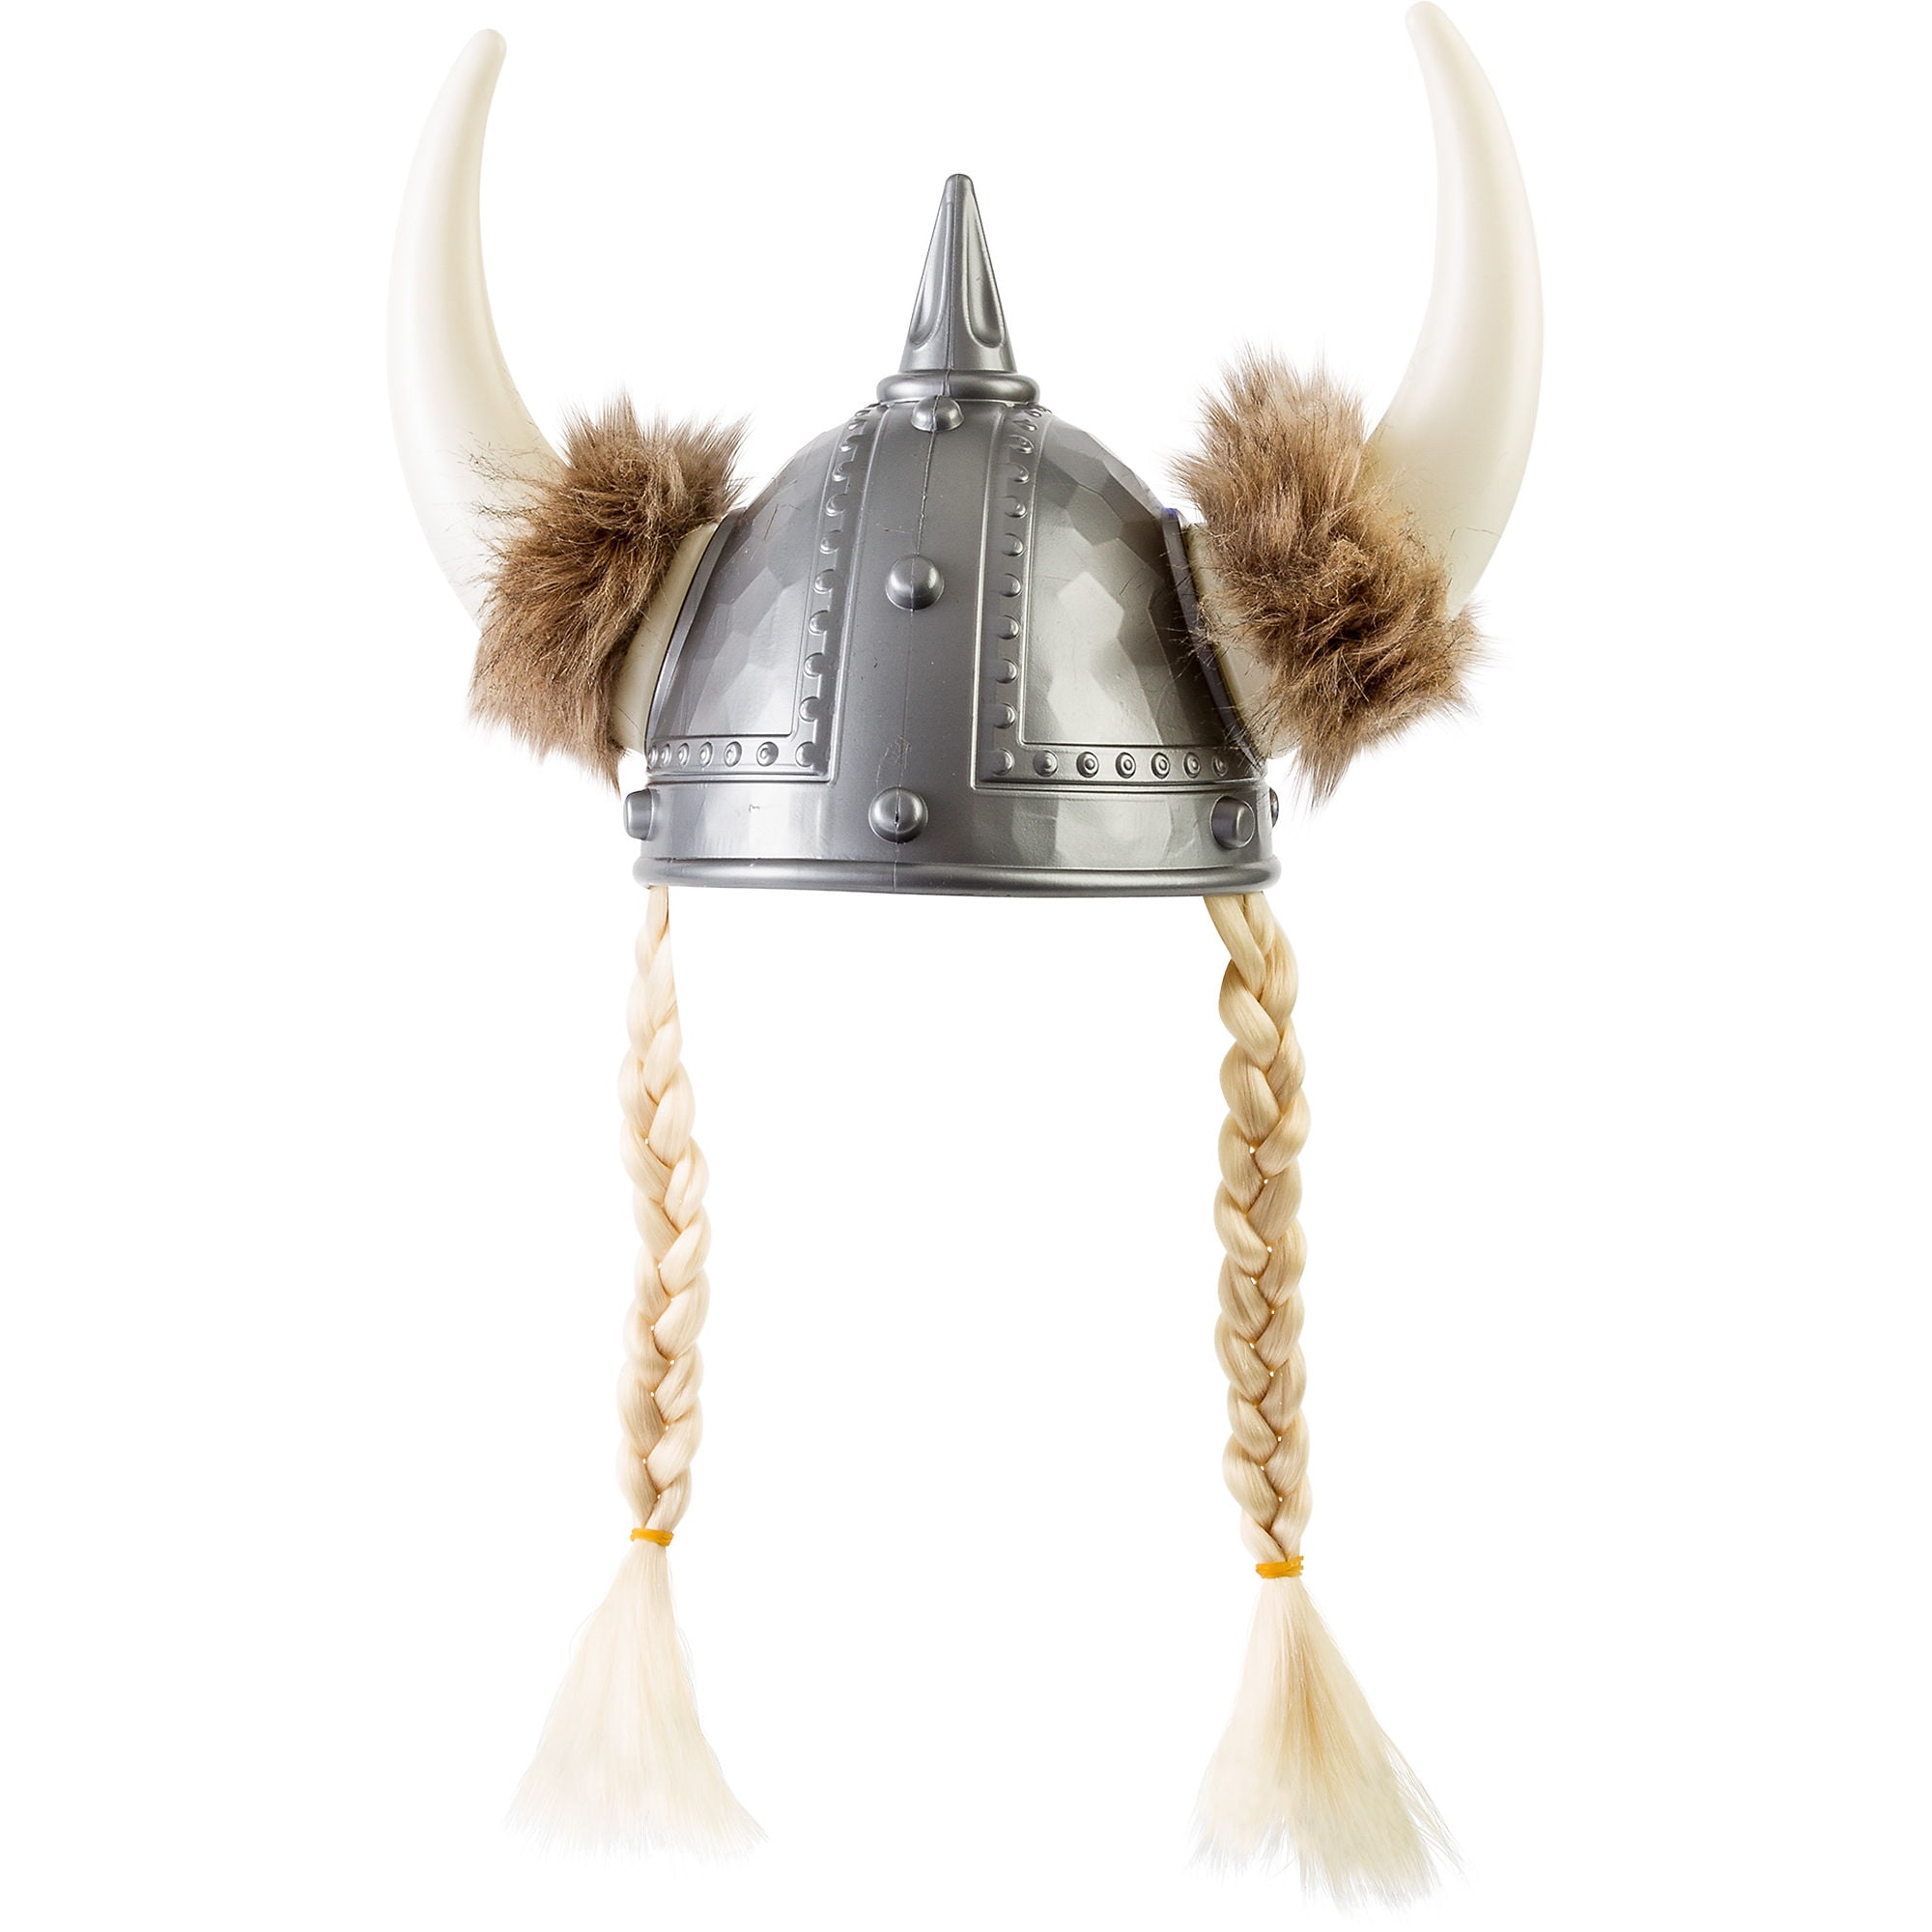 Nordic Viking Warrior Helmet with Horns Novelty Metal Vanity Tag License Plate